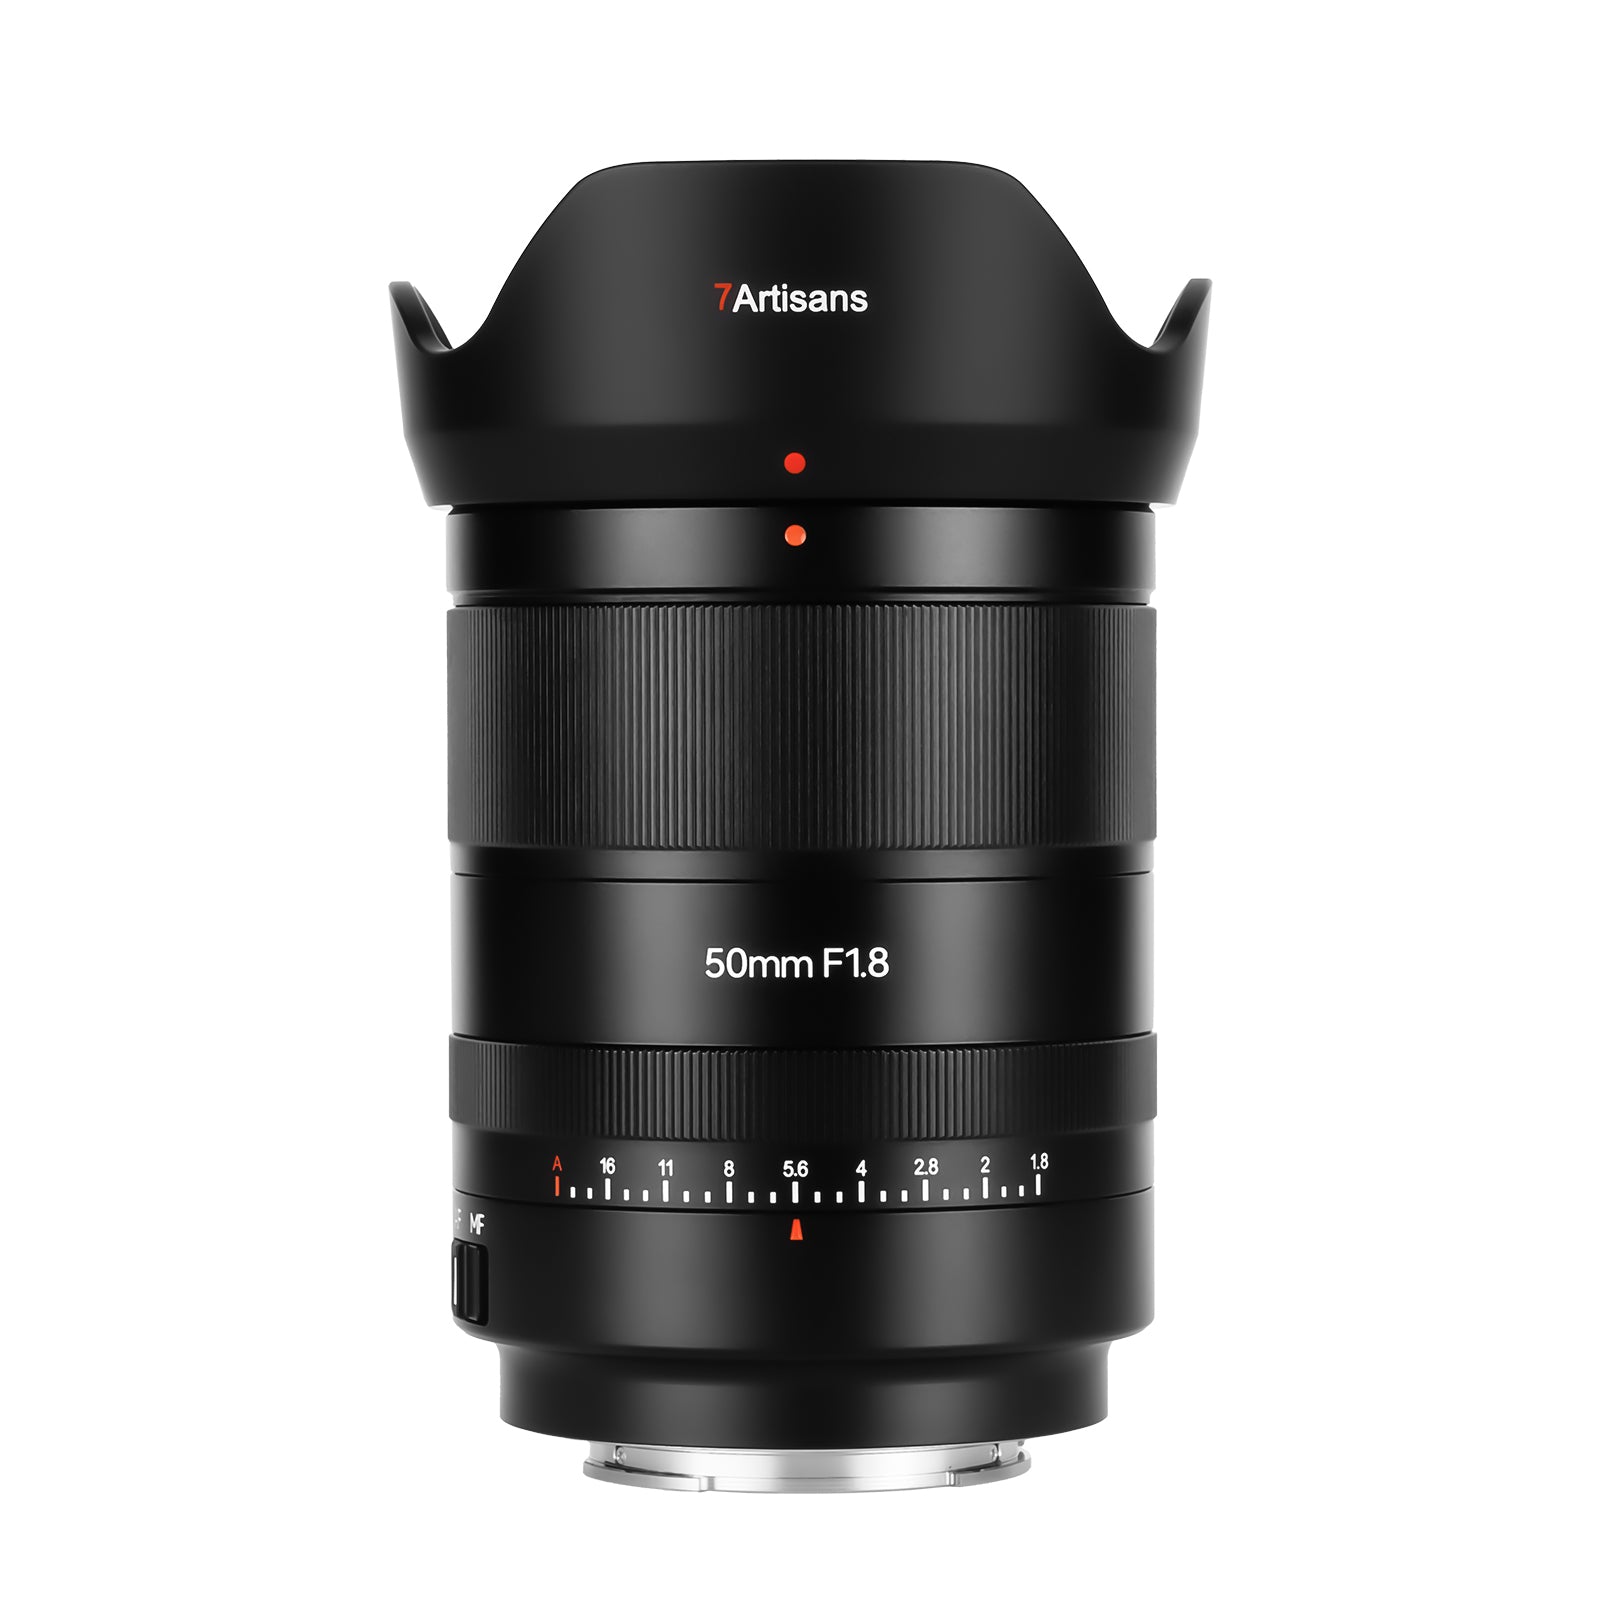 7Artisans AF 50mm F1.8 Large Aperture Full Frame Lens for Sony E Mount